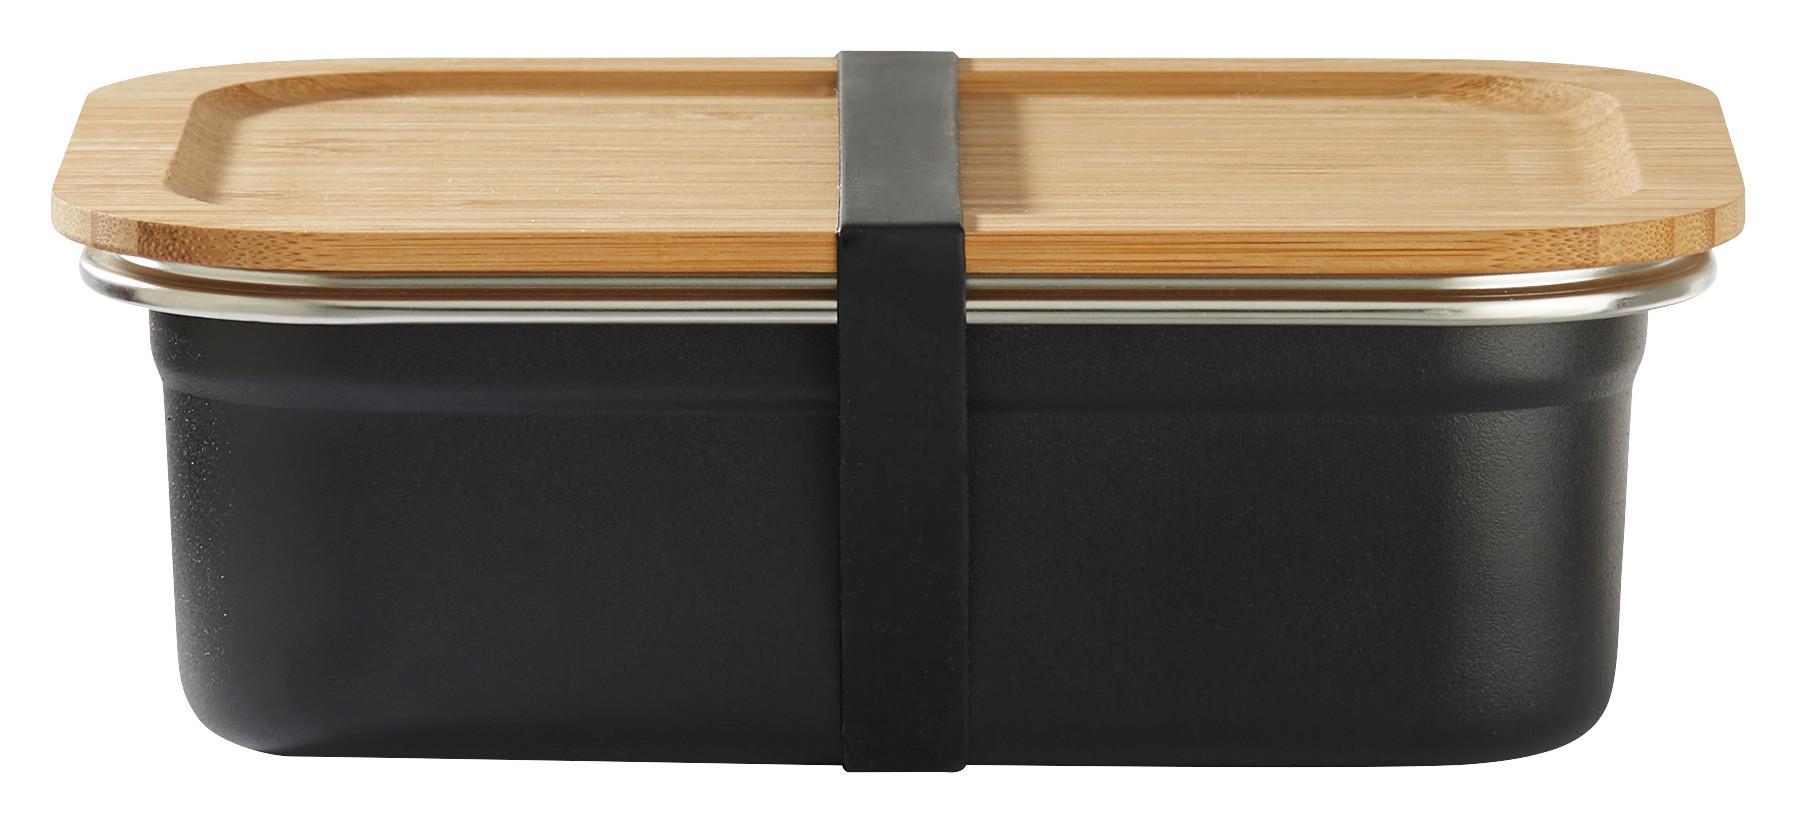 Lunchbox Ivar in Schwarz ca. 1,2l - Schwarz/Naturfarben, Holz/Metall (19,3/6/14,3cm) - Premium Living